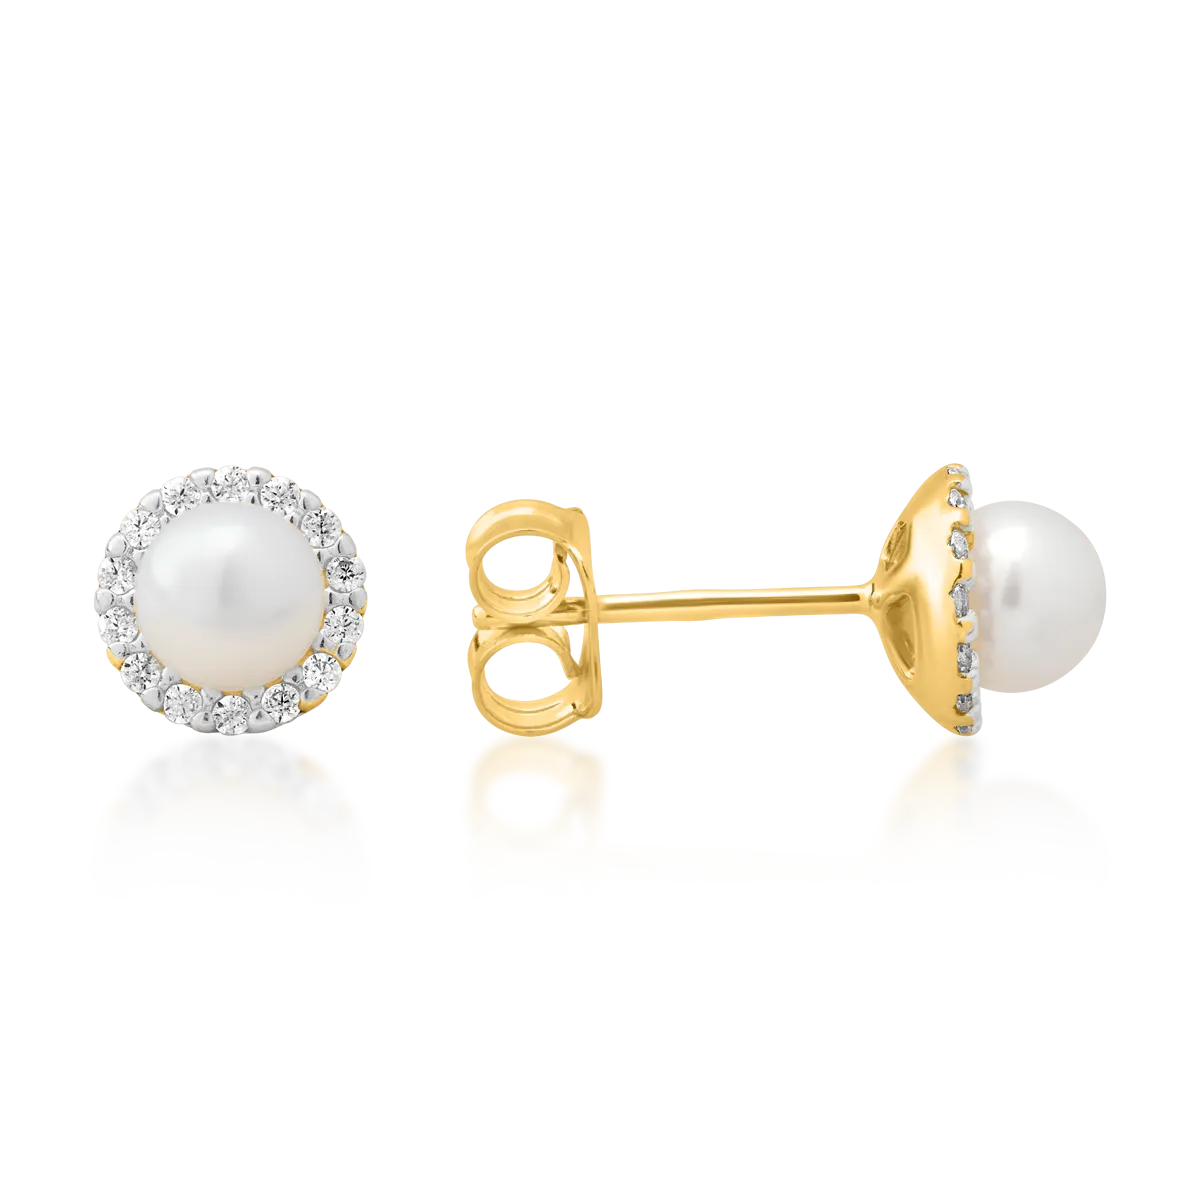 Cercei minimalisti din aur galben cu perle sintetice si zirconii